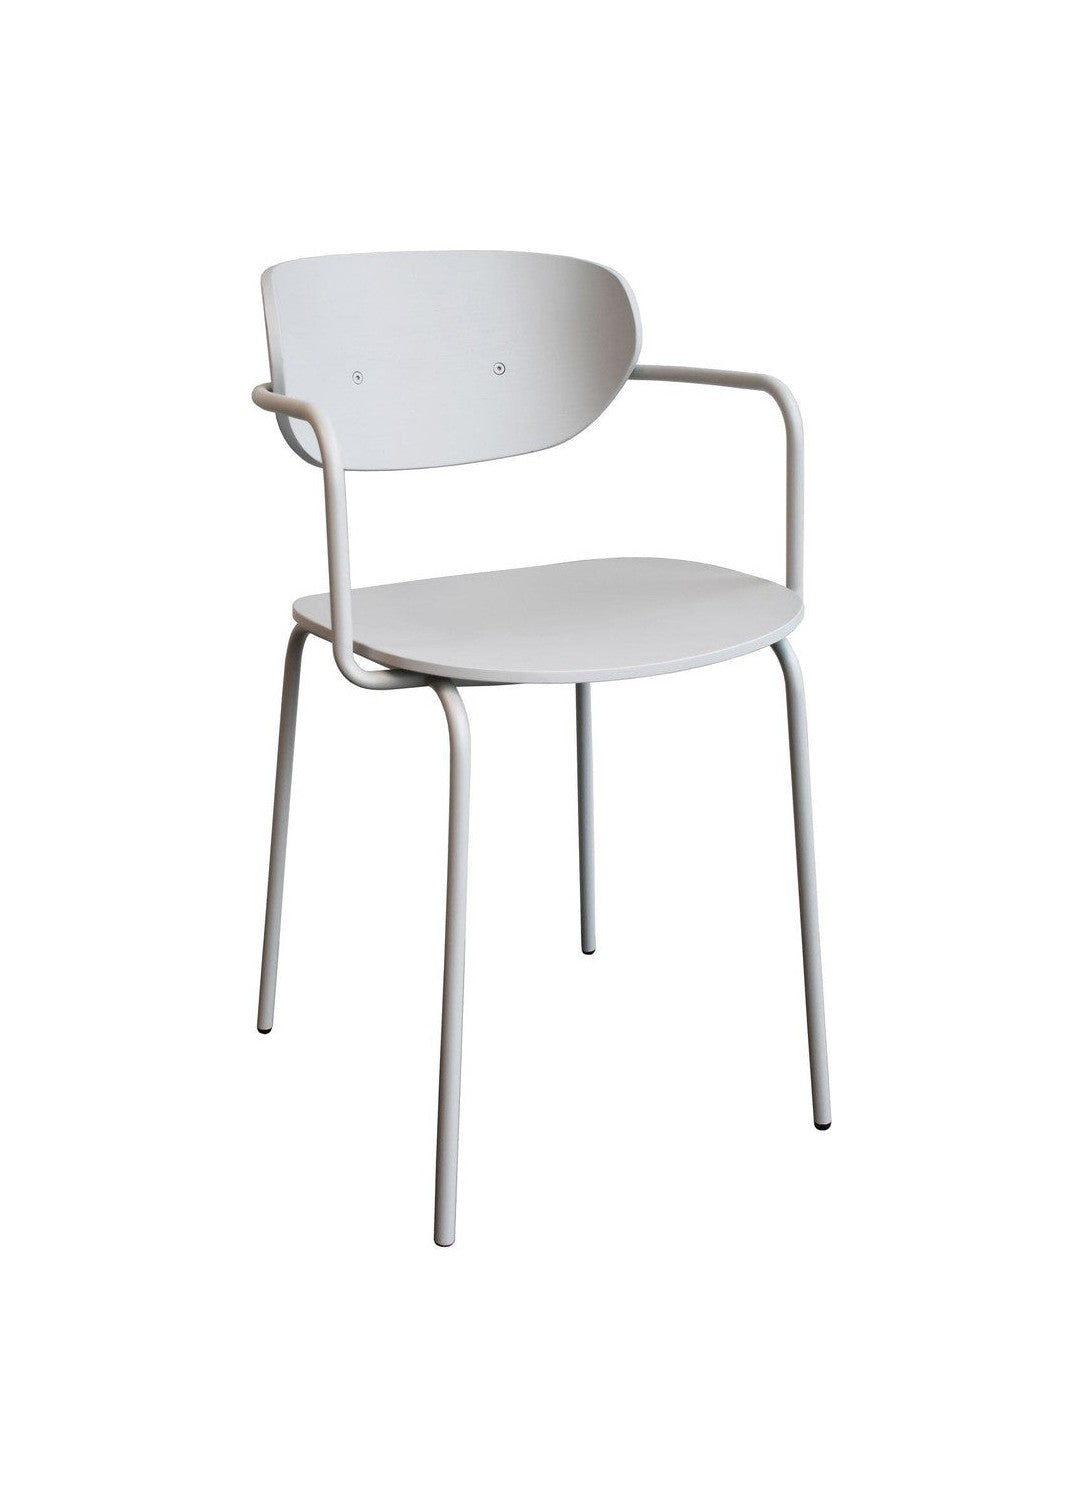 Hübsch Arch Dining Chair Light grey